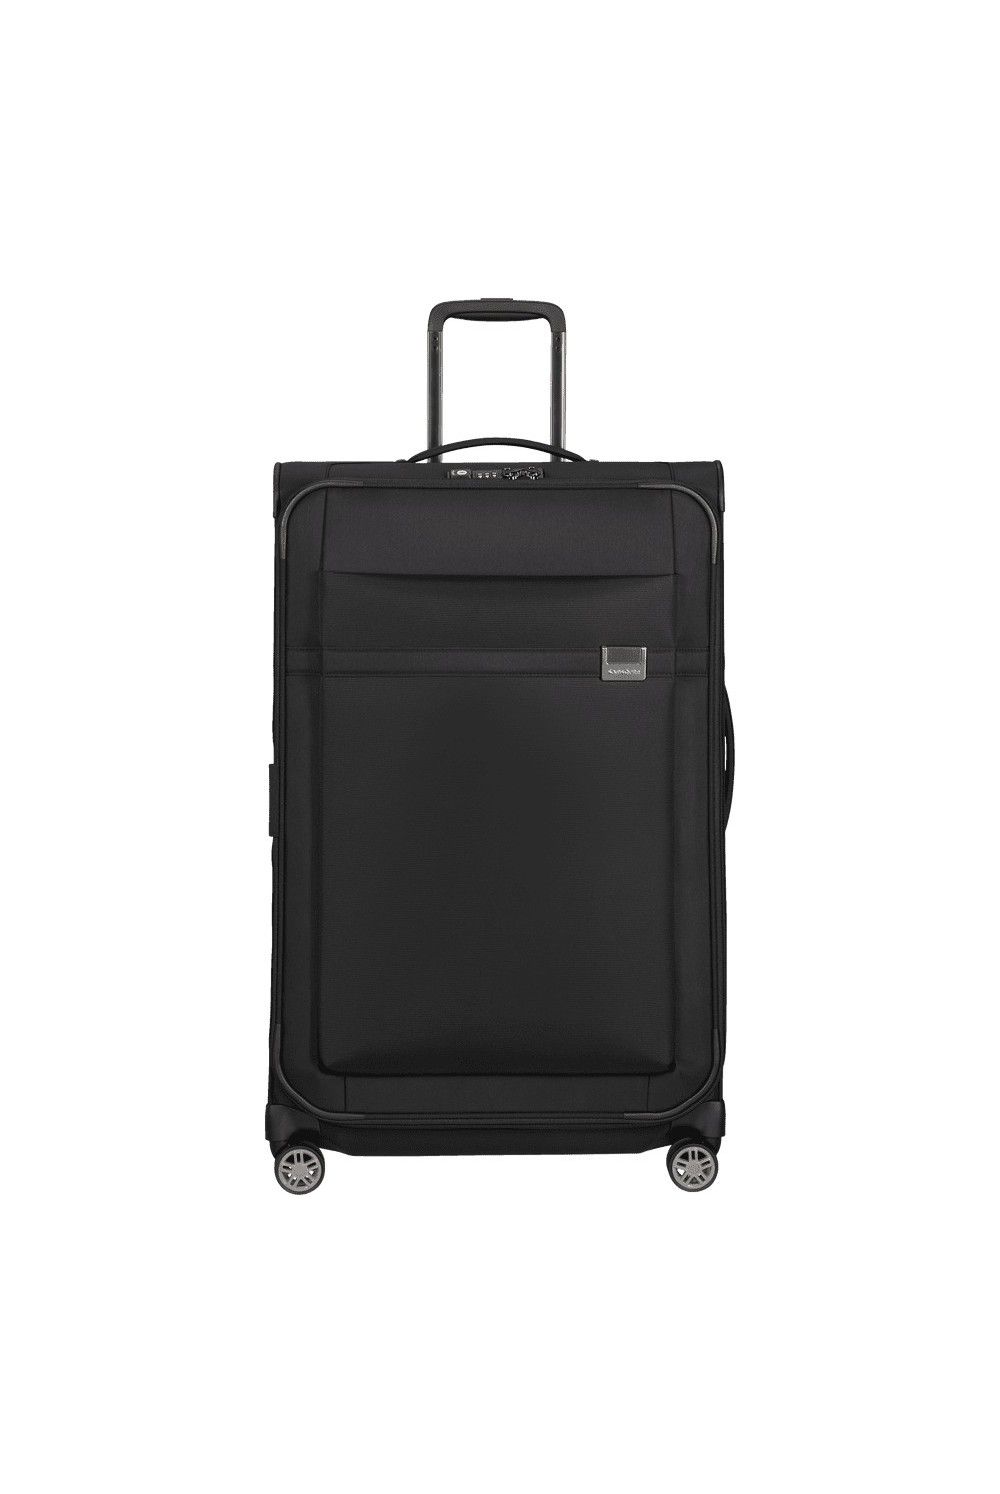 Samsonite Airea 78x49x29-33cm Large suitcase 4 wheels